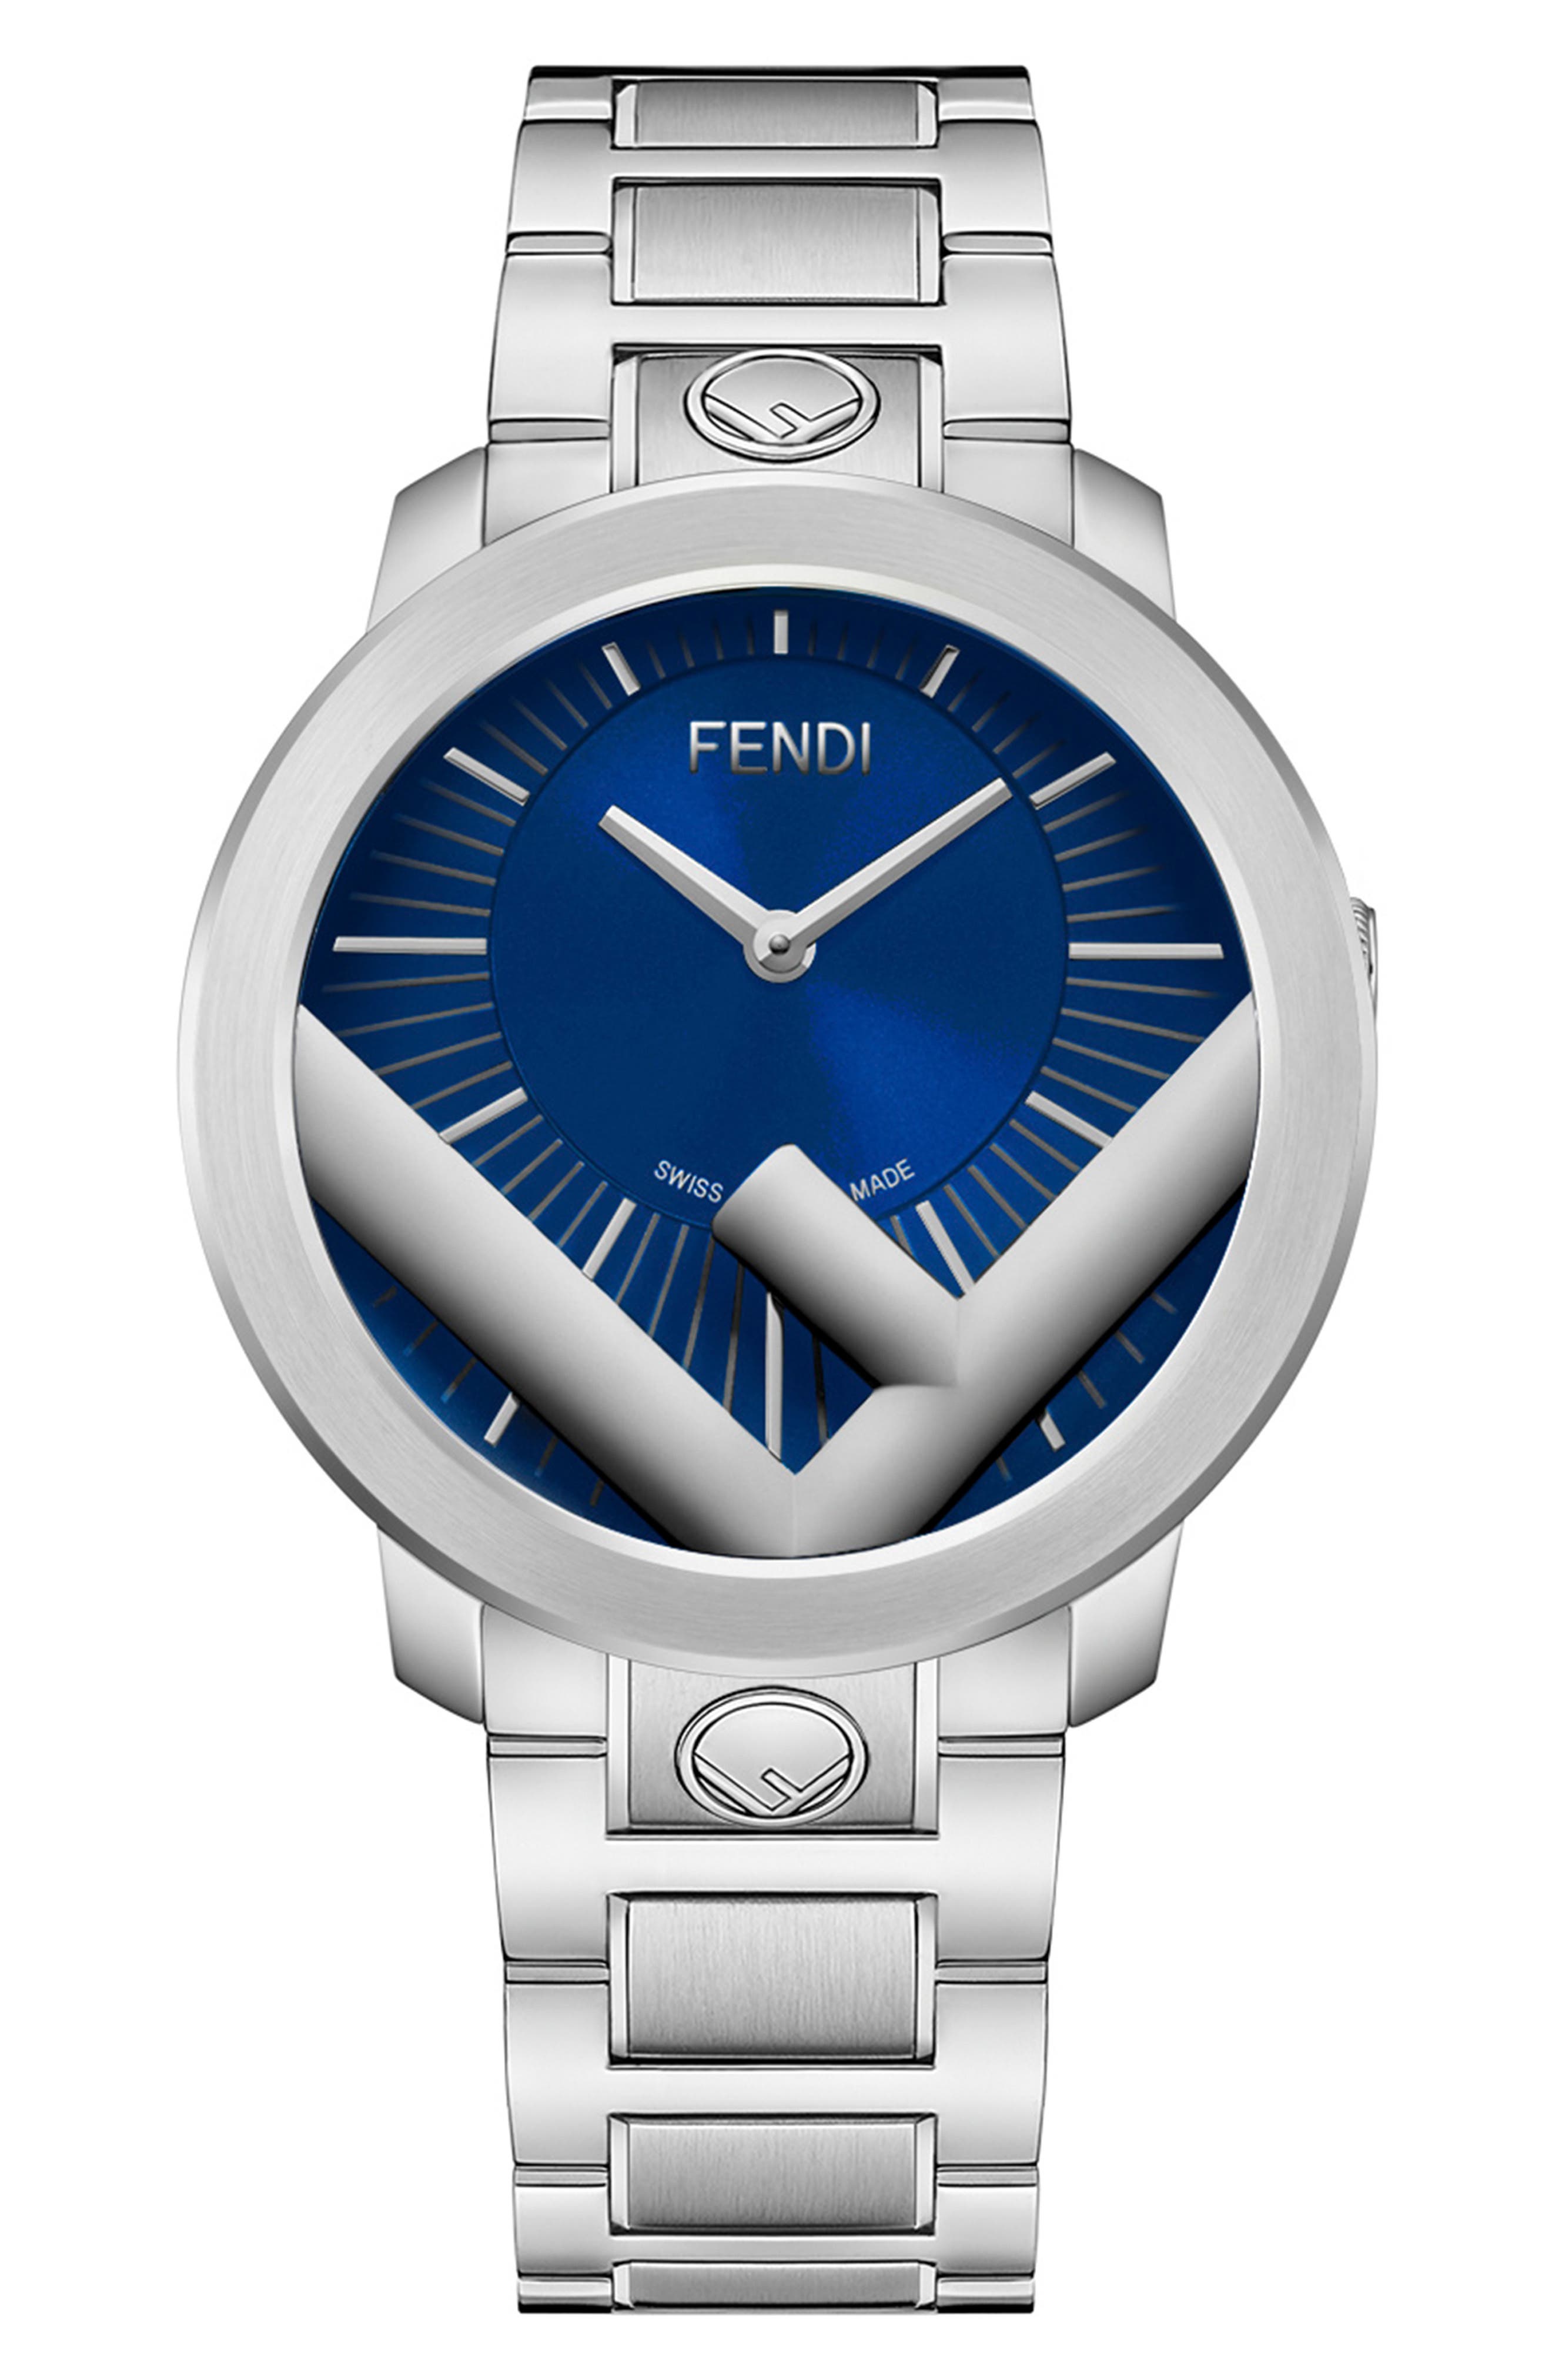 fendi watches price